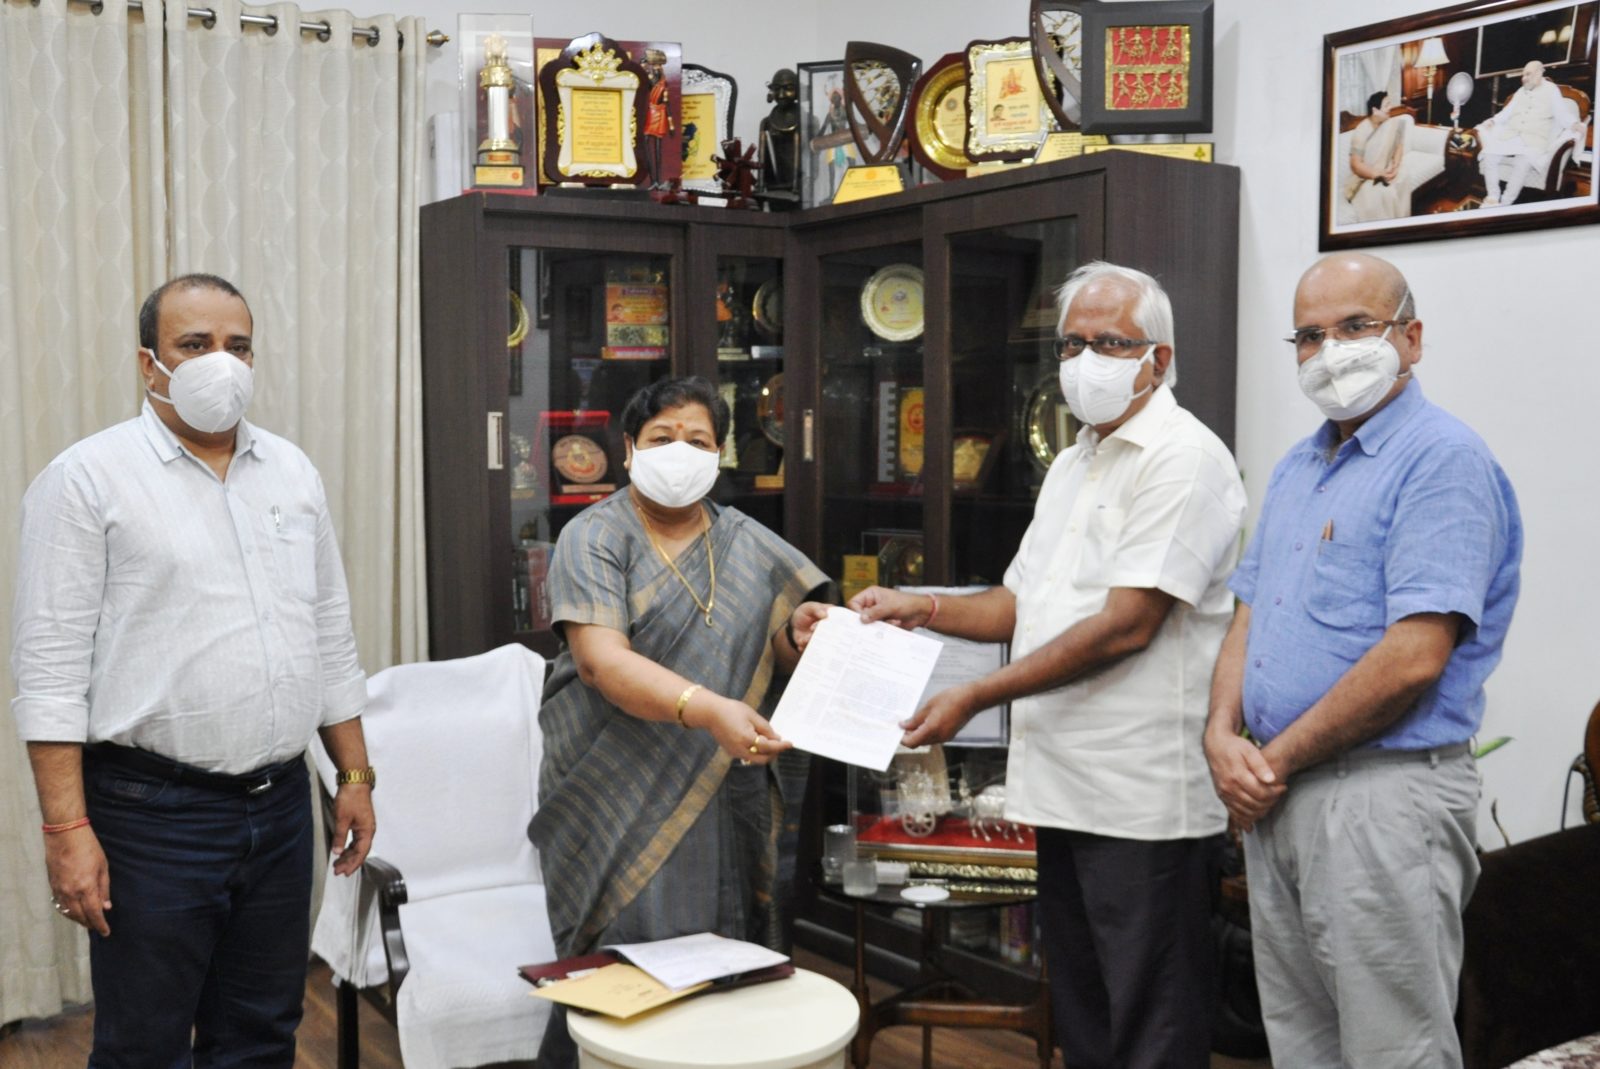 रायपुर : राज्यपाल को इंडियन मेडिकल एसोशिएसन के प्रतिनिधिमंडल ने सौंपा ज्ञापन : हिंसक गतिविधियों के विरूद्ध कड़ी कार्रवाई करने एवं सुरक्षा देने का किया आग्रह